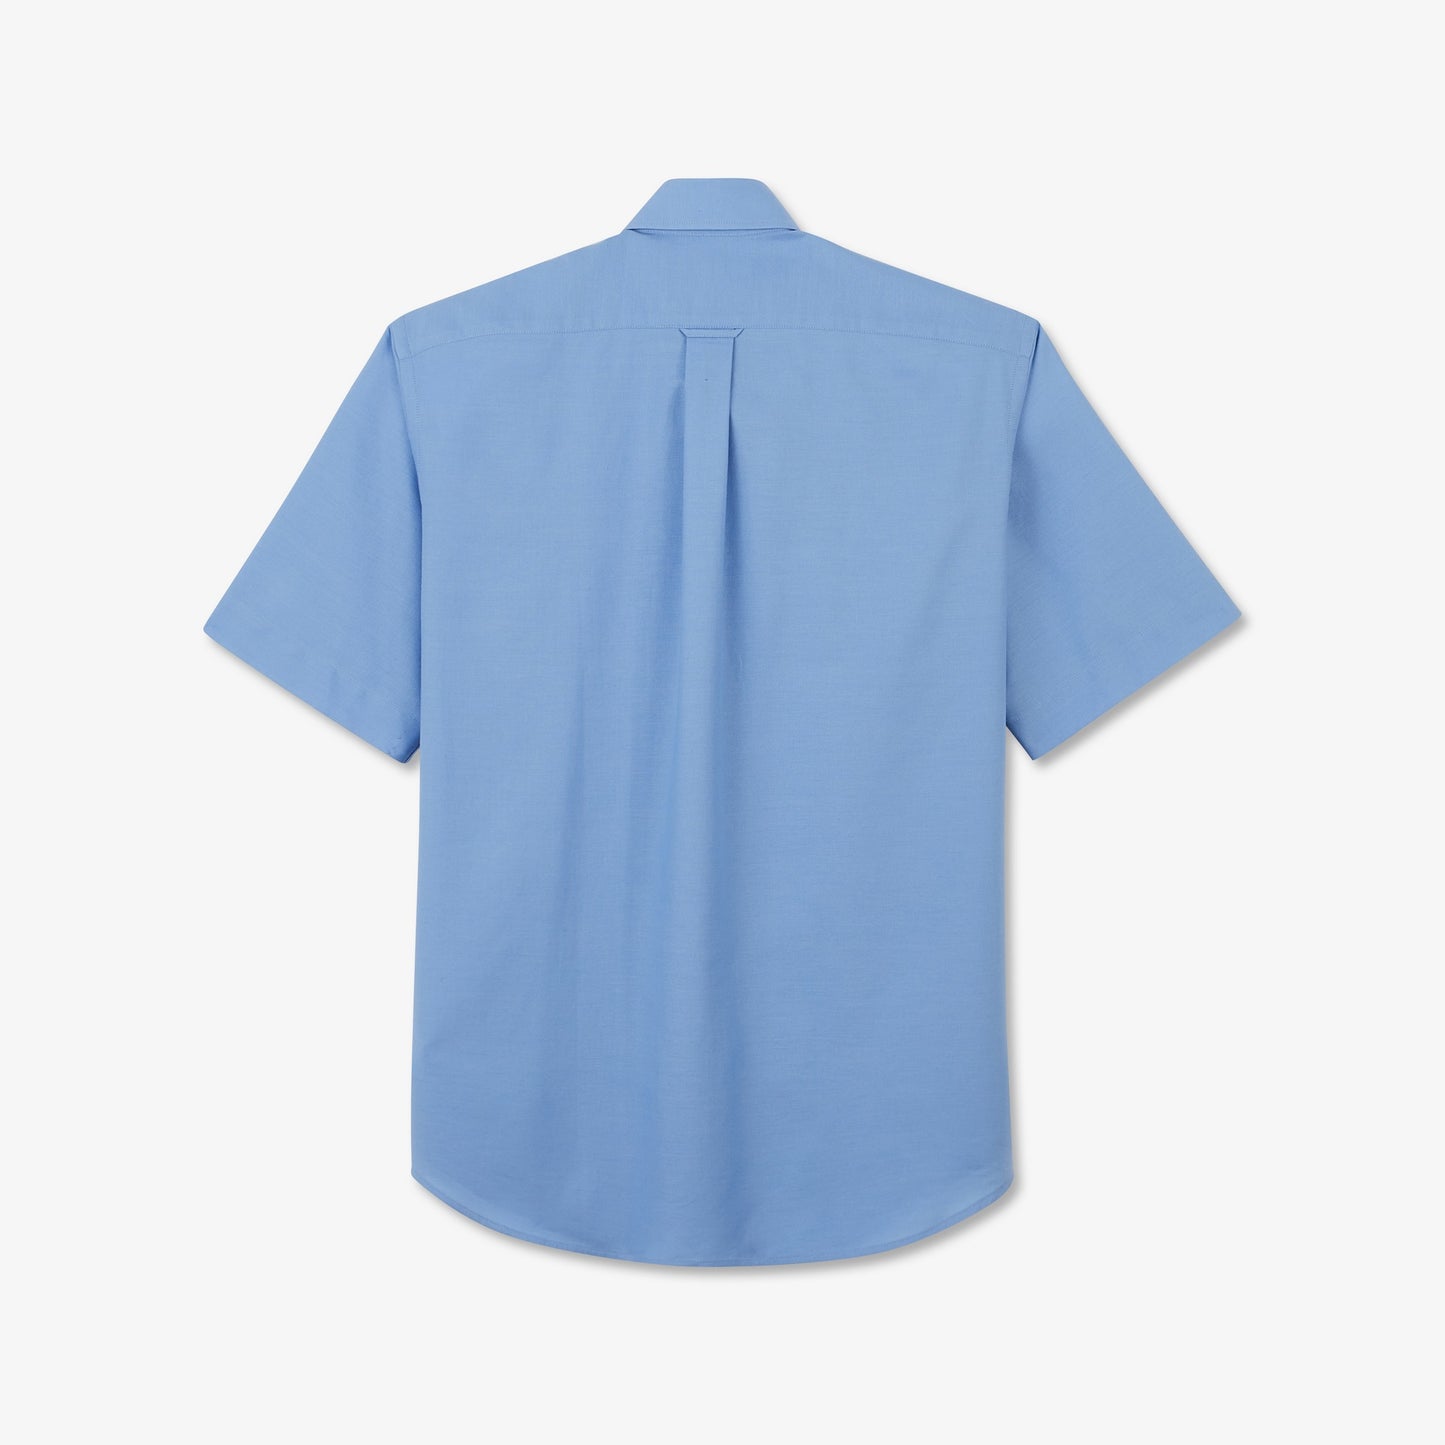 Eden Park Short Sleeve Light Blue Cotton Shirt